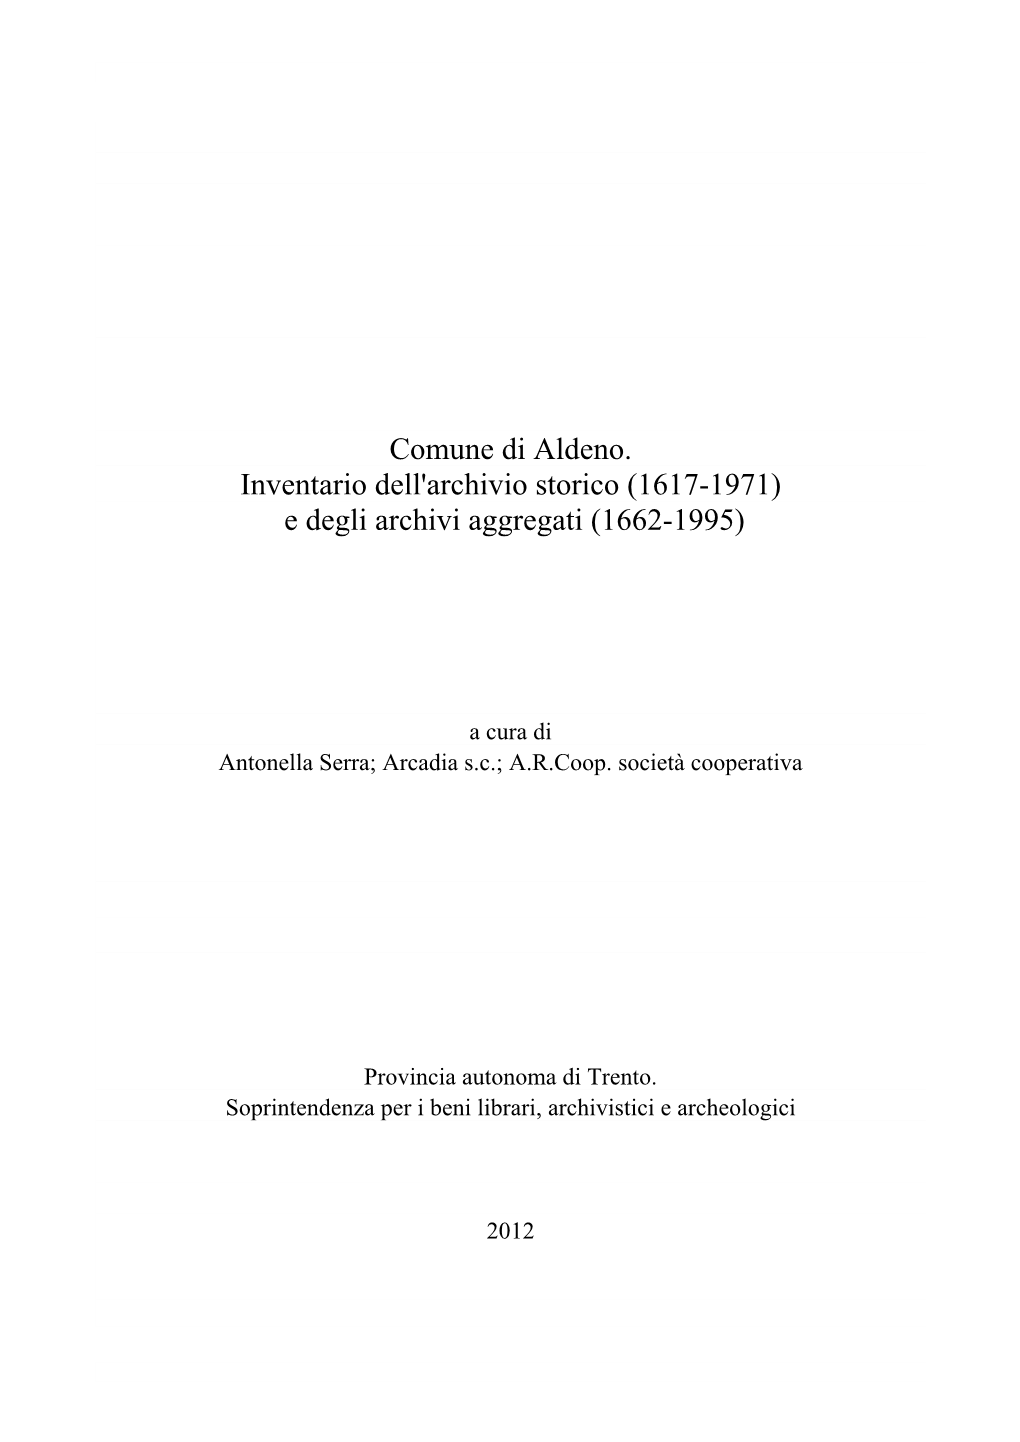 Comune Di Aldeno. Inventario Dell'archivio Storico (1617-1971) E Degli Archivi Aggregati (1662-1995)